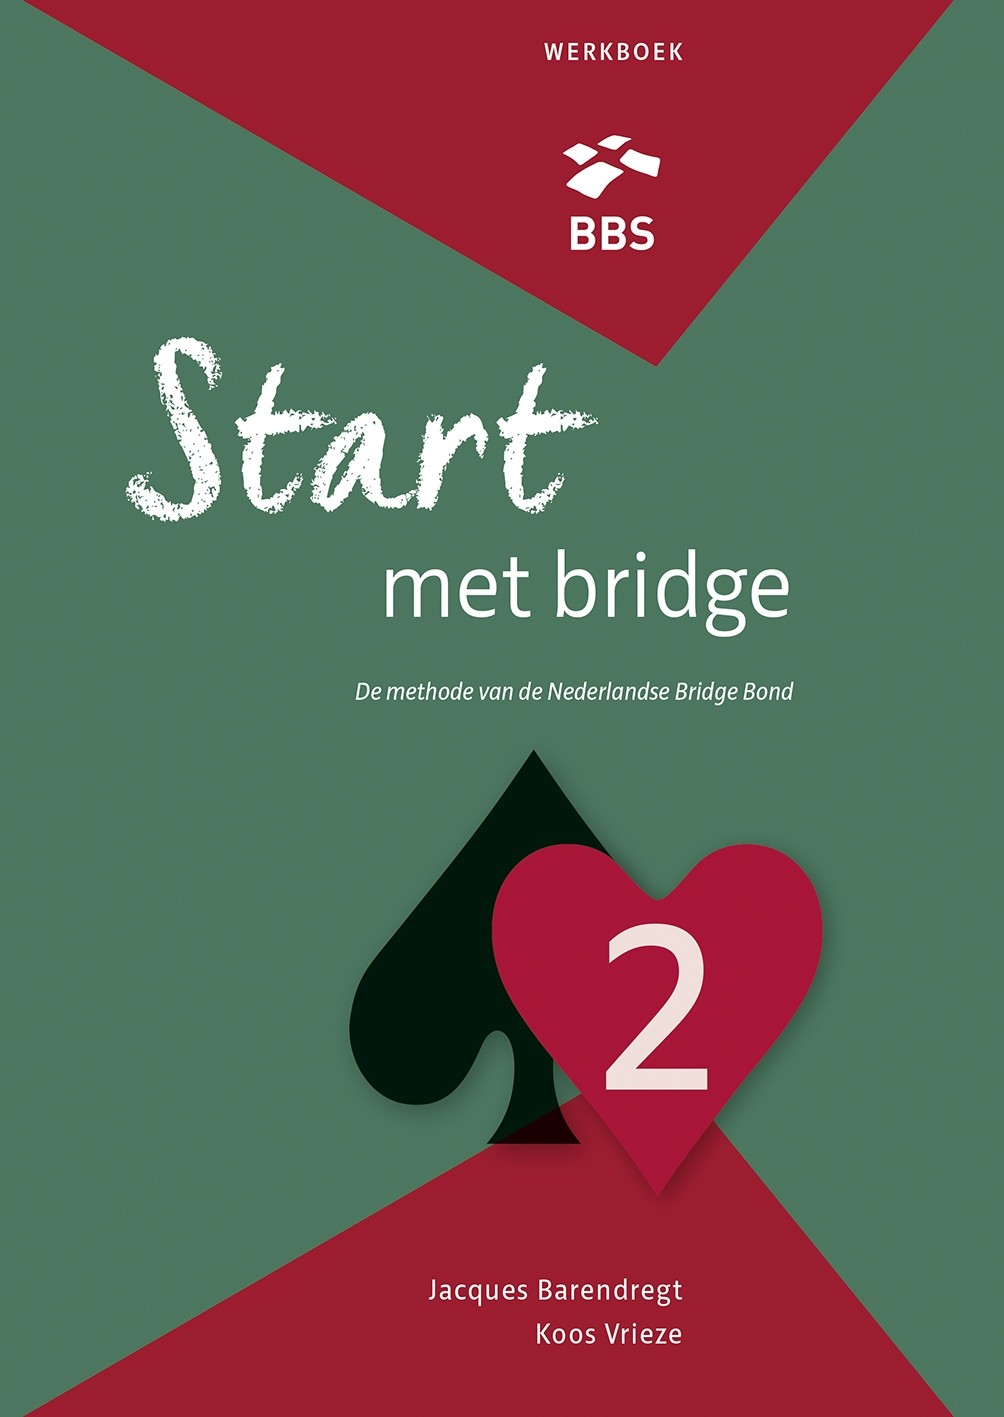 Start met bridge - Werkboek - Deel 2